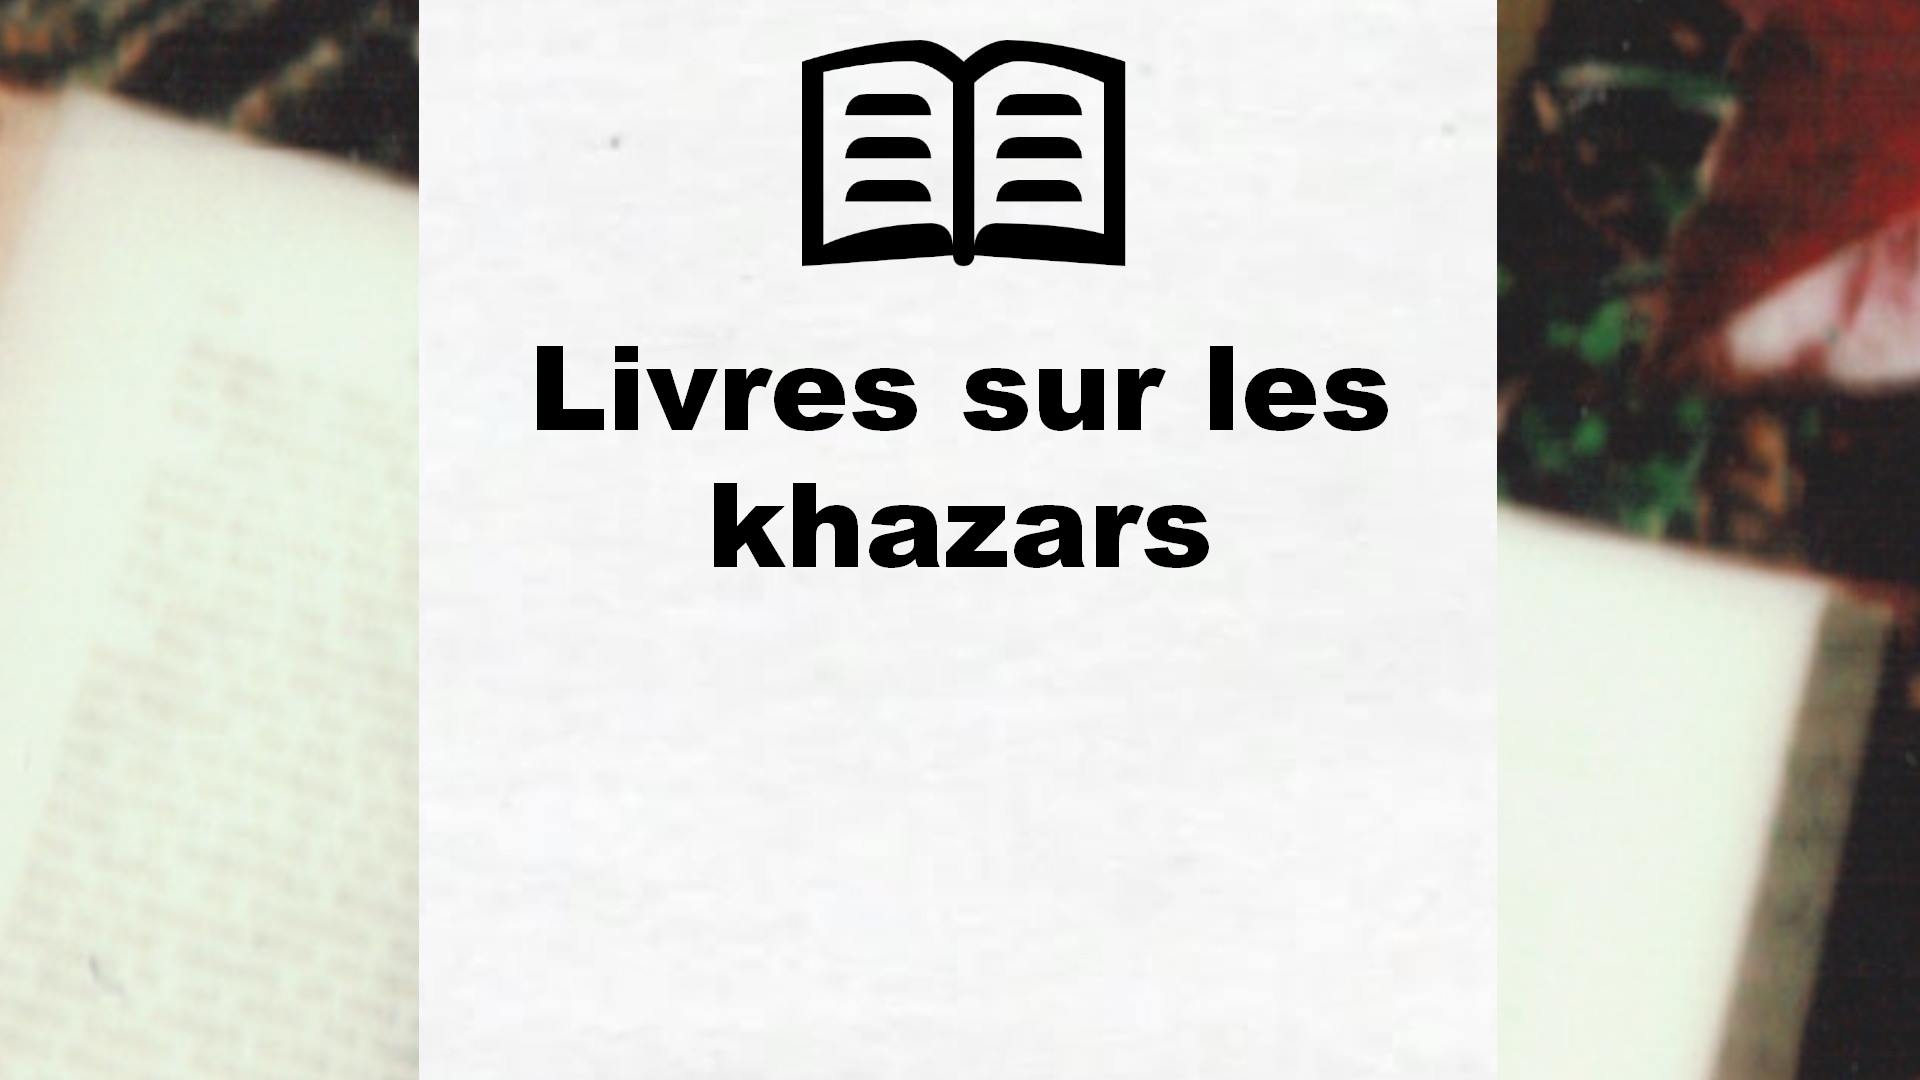 Livres sur les khazars